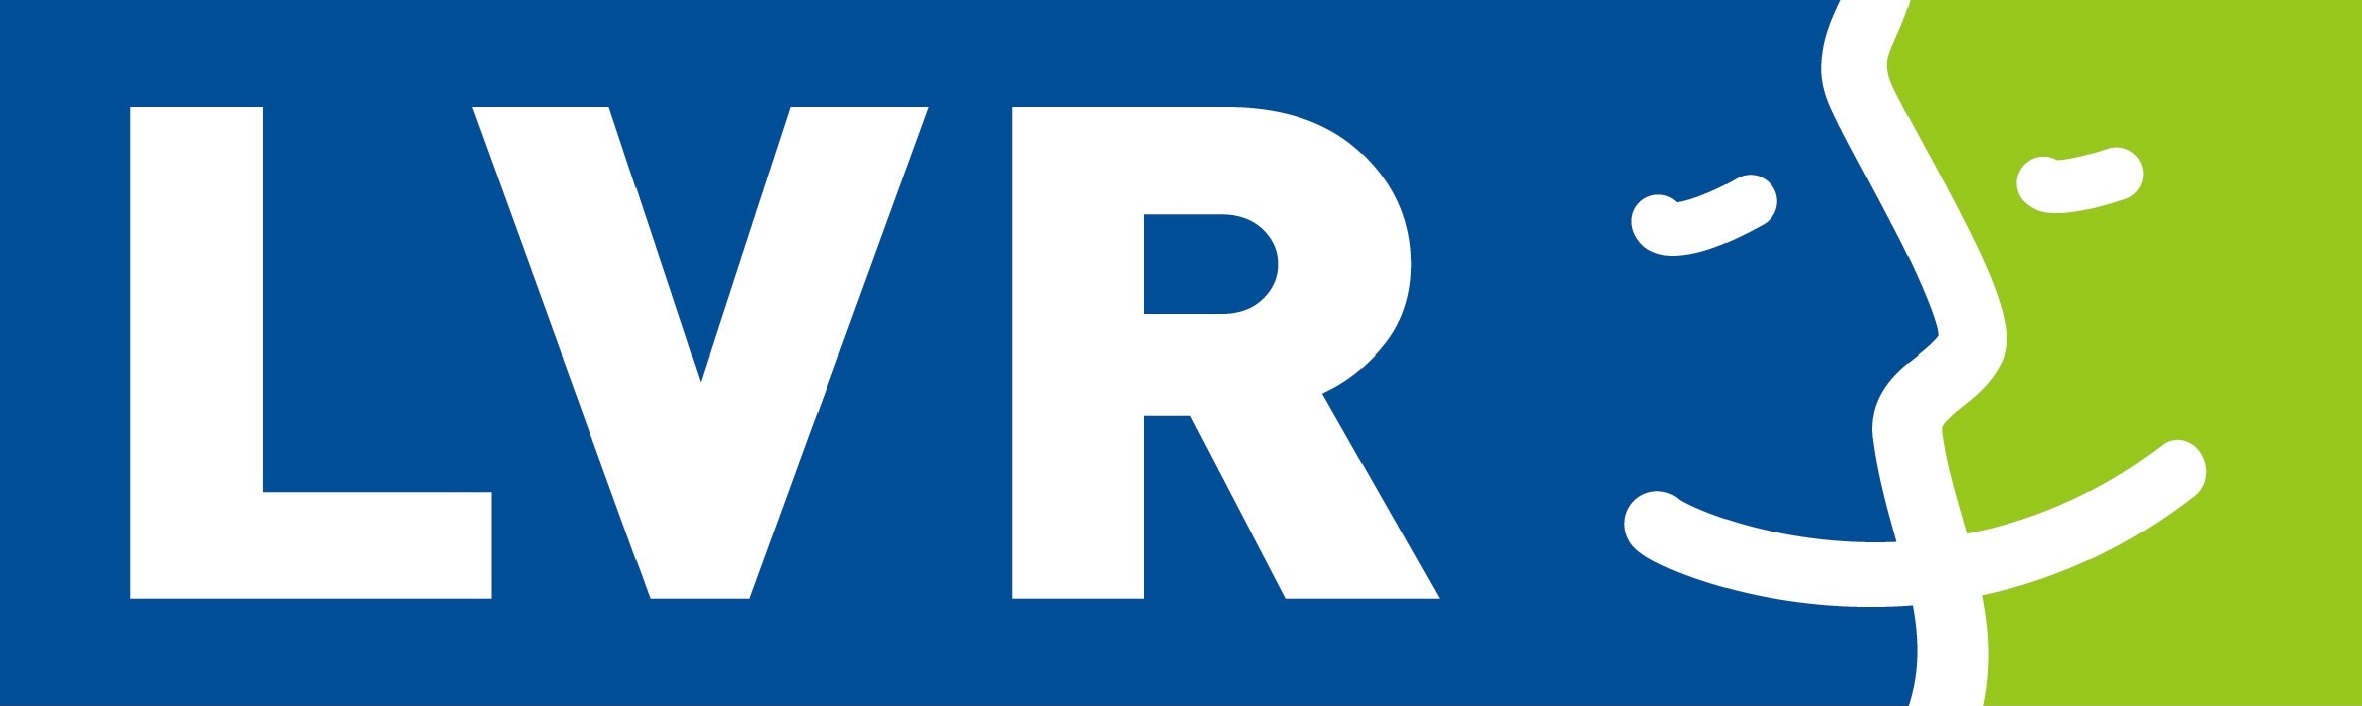 LVR-Klinik Düren